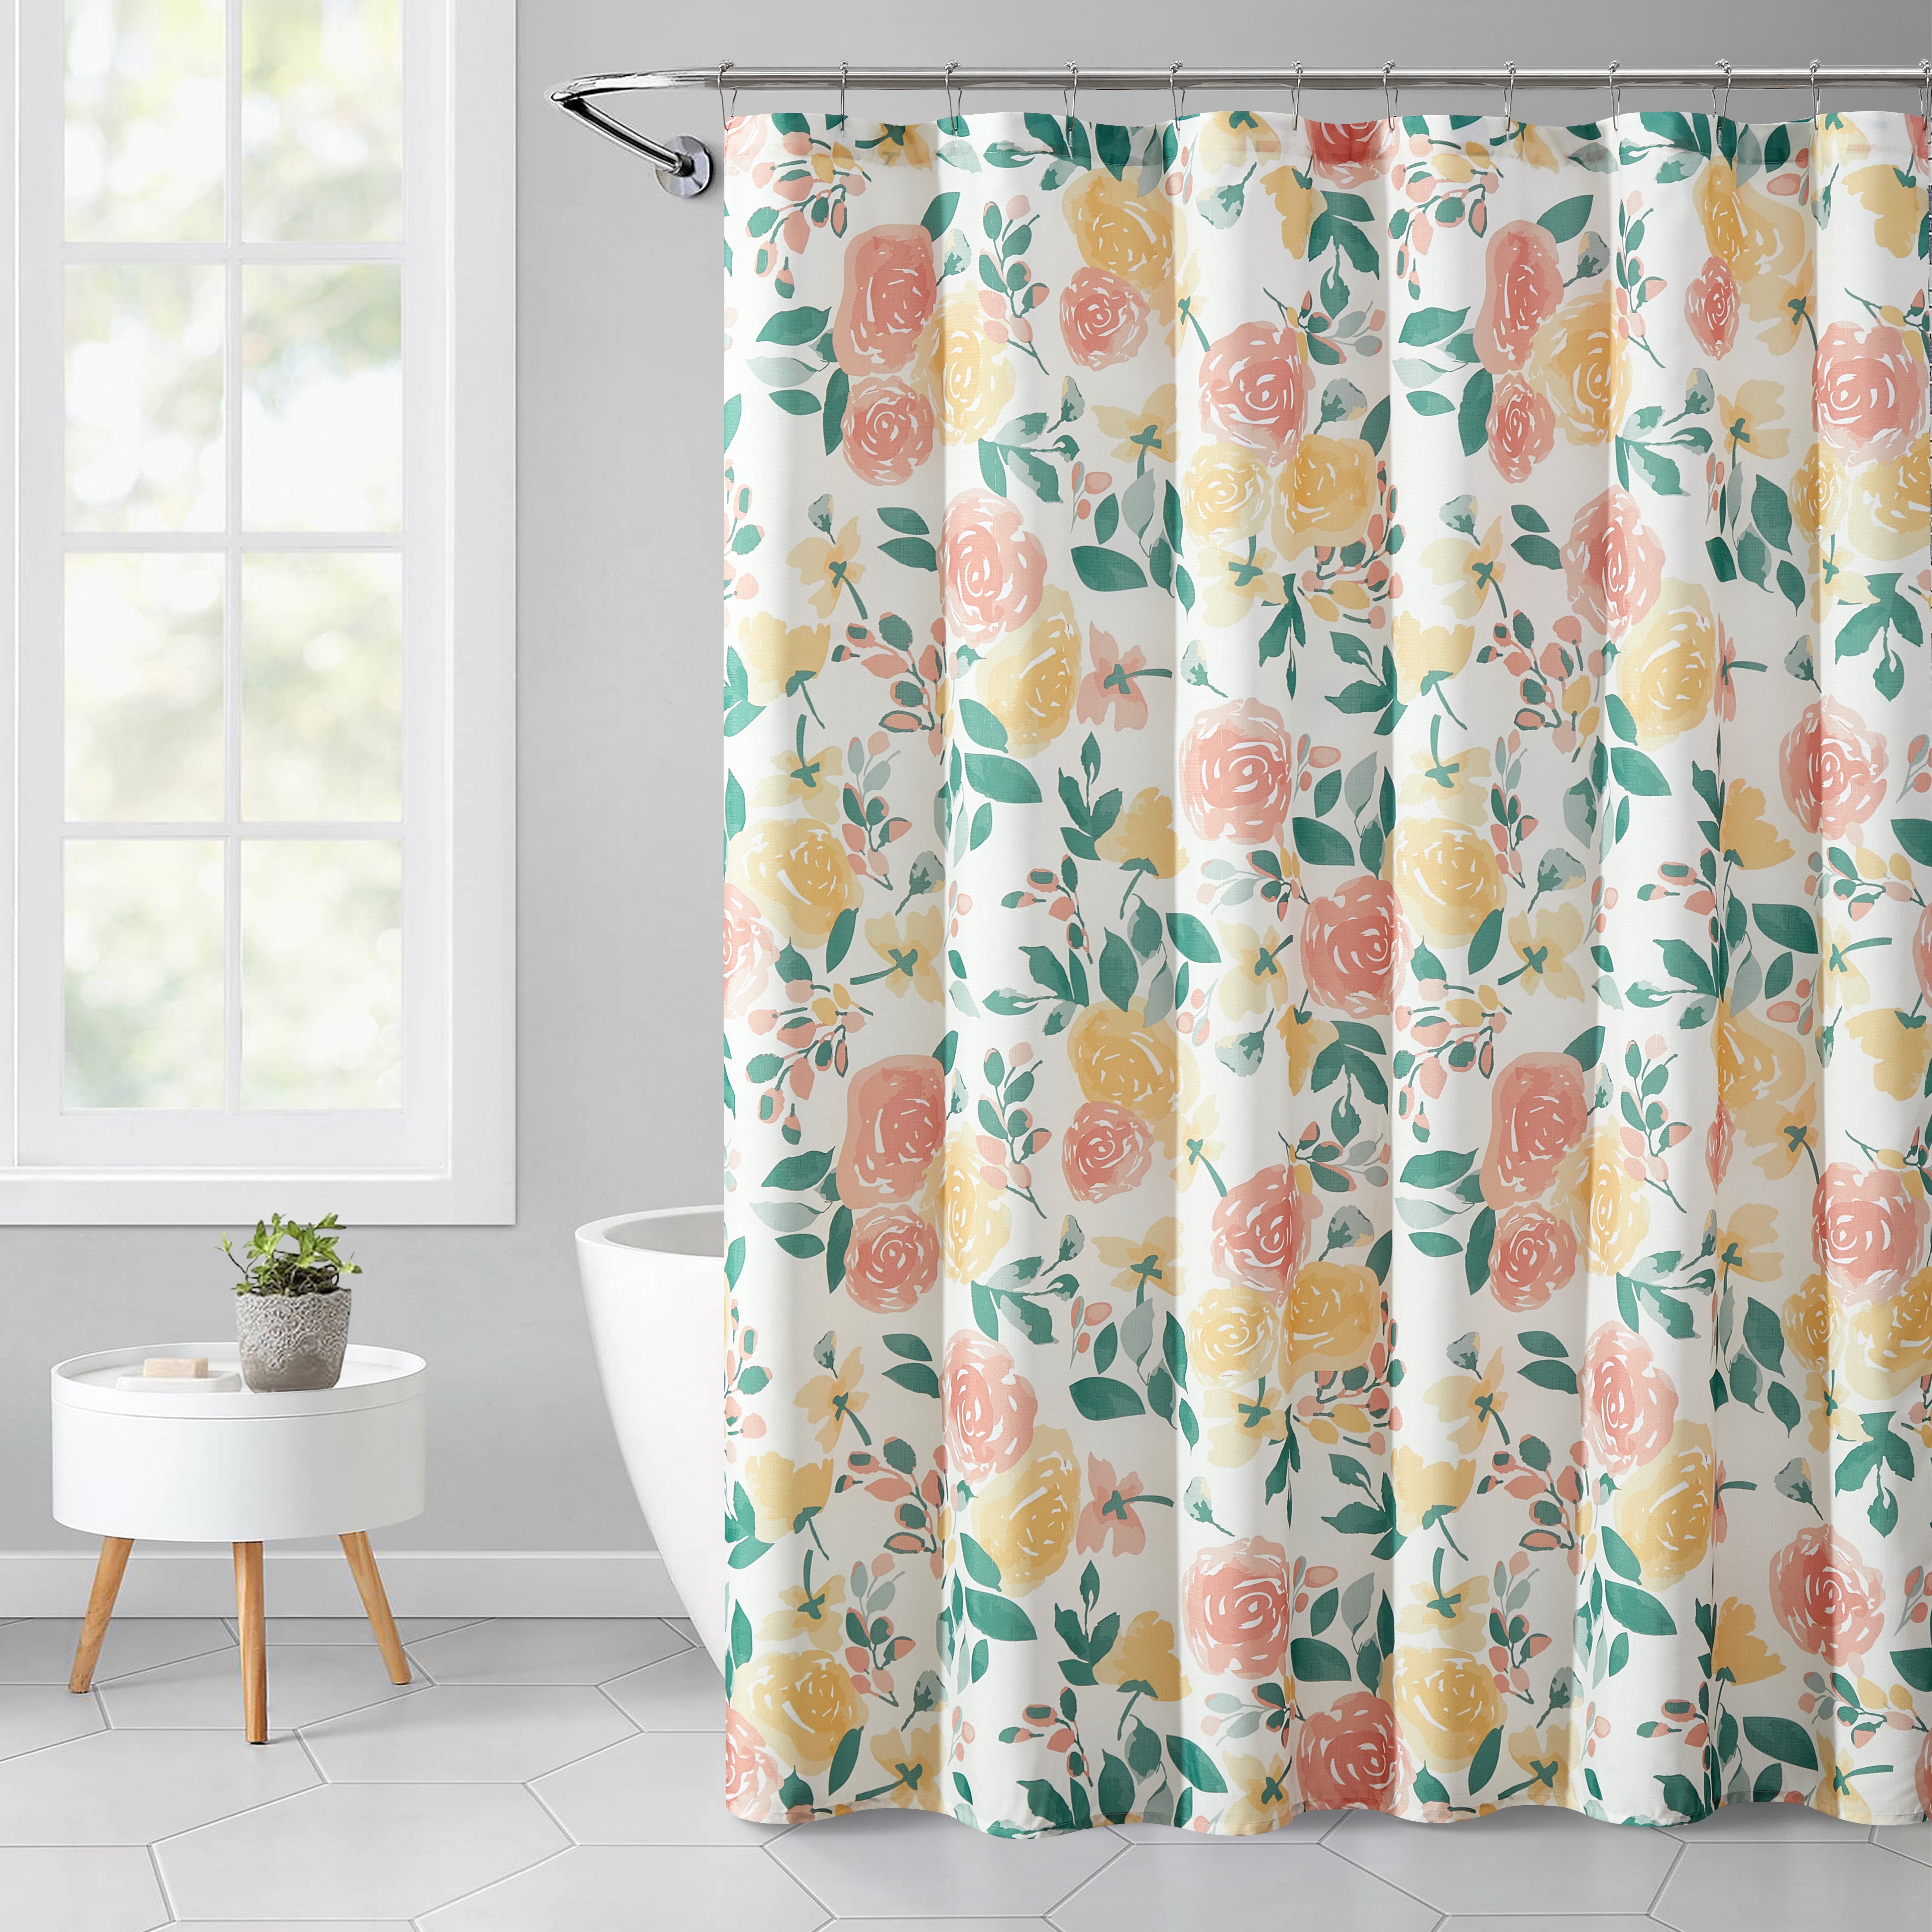 Creative Motorcycle Shower Curtain Bedroom Waterproof Fabric & 12hooks 71*71in 